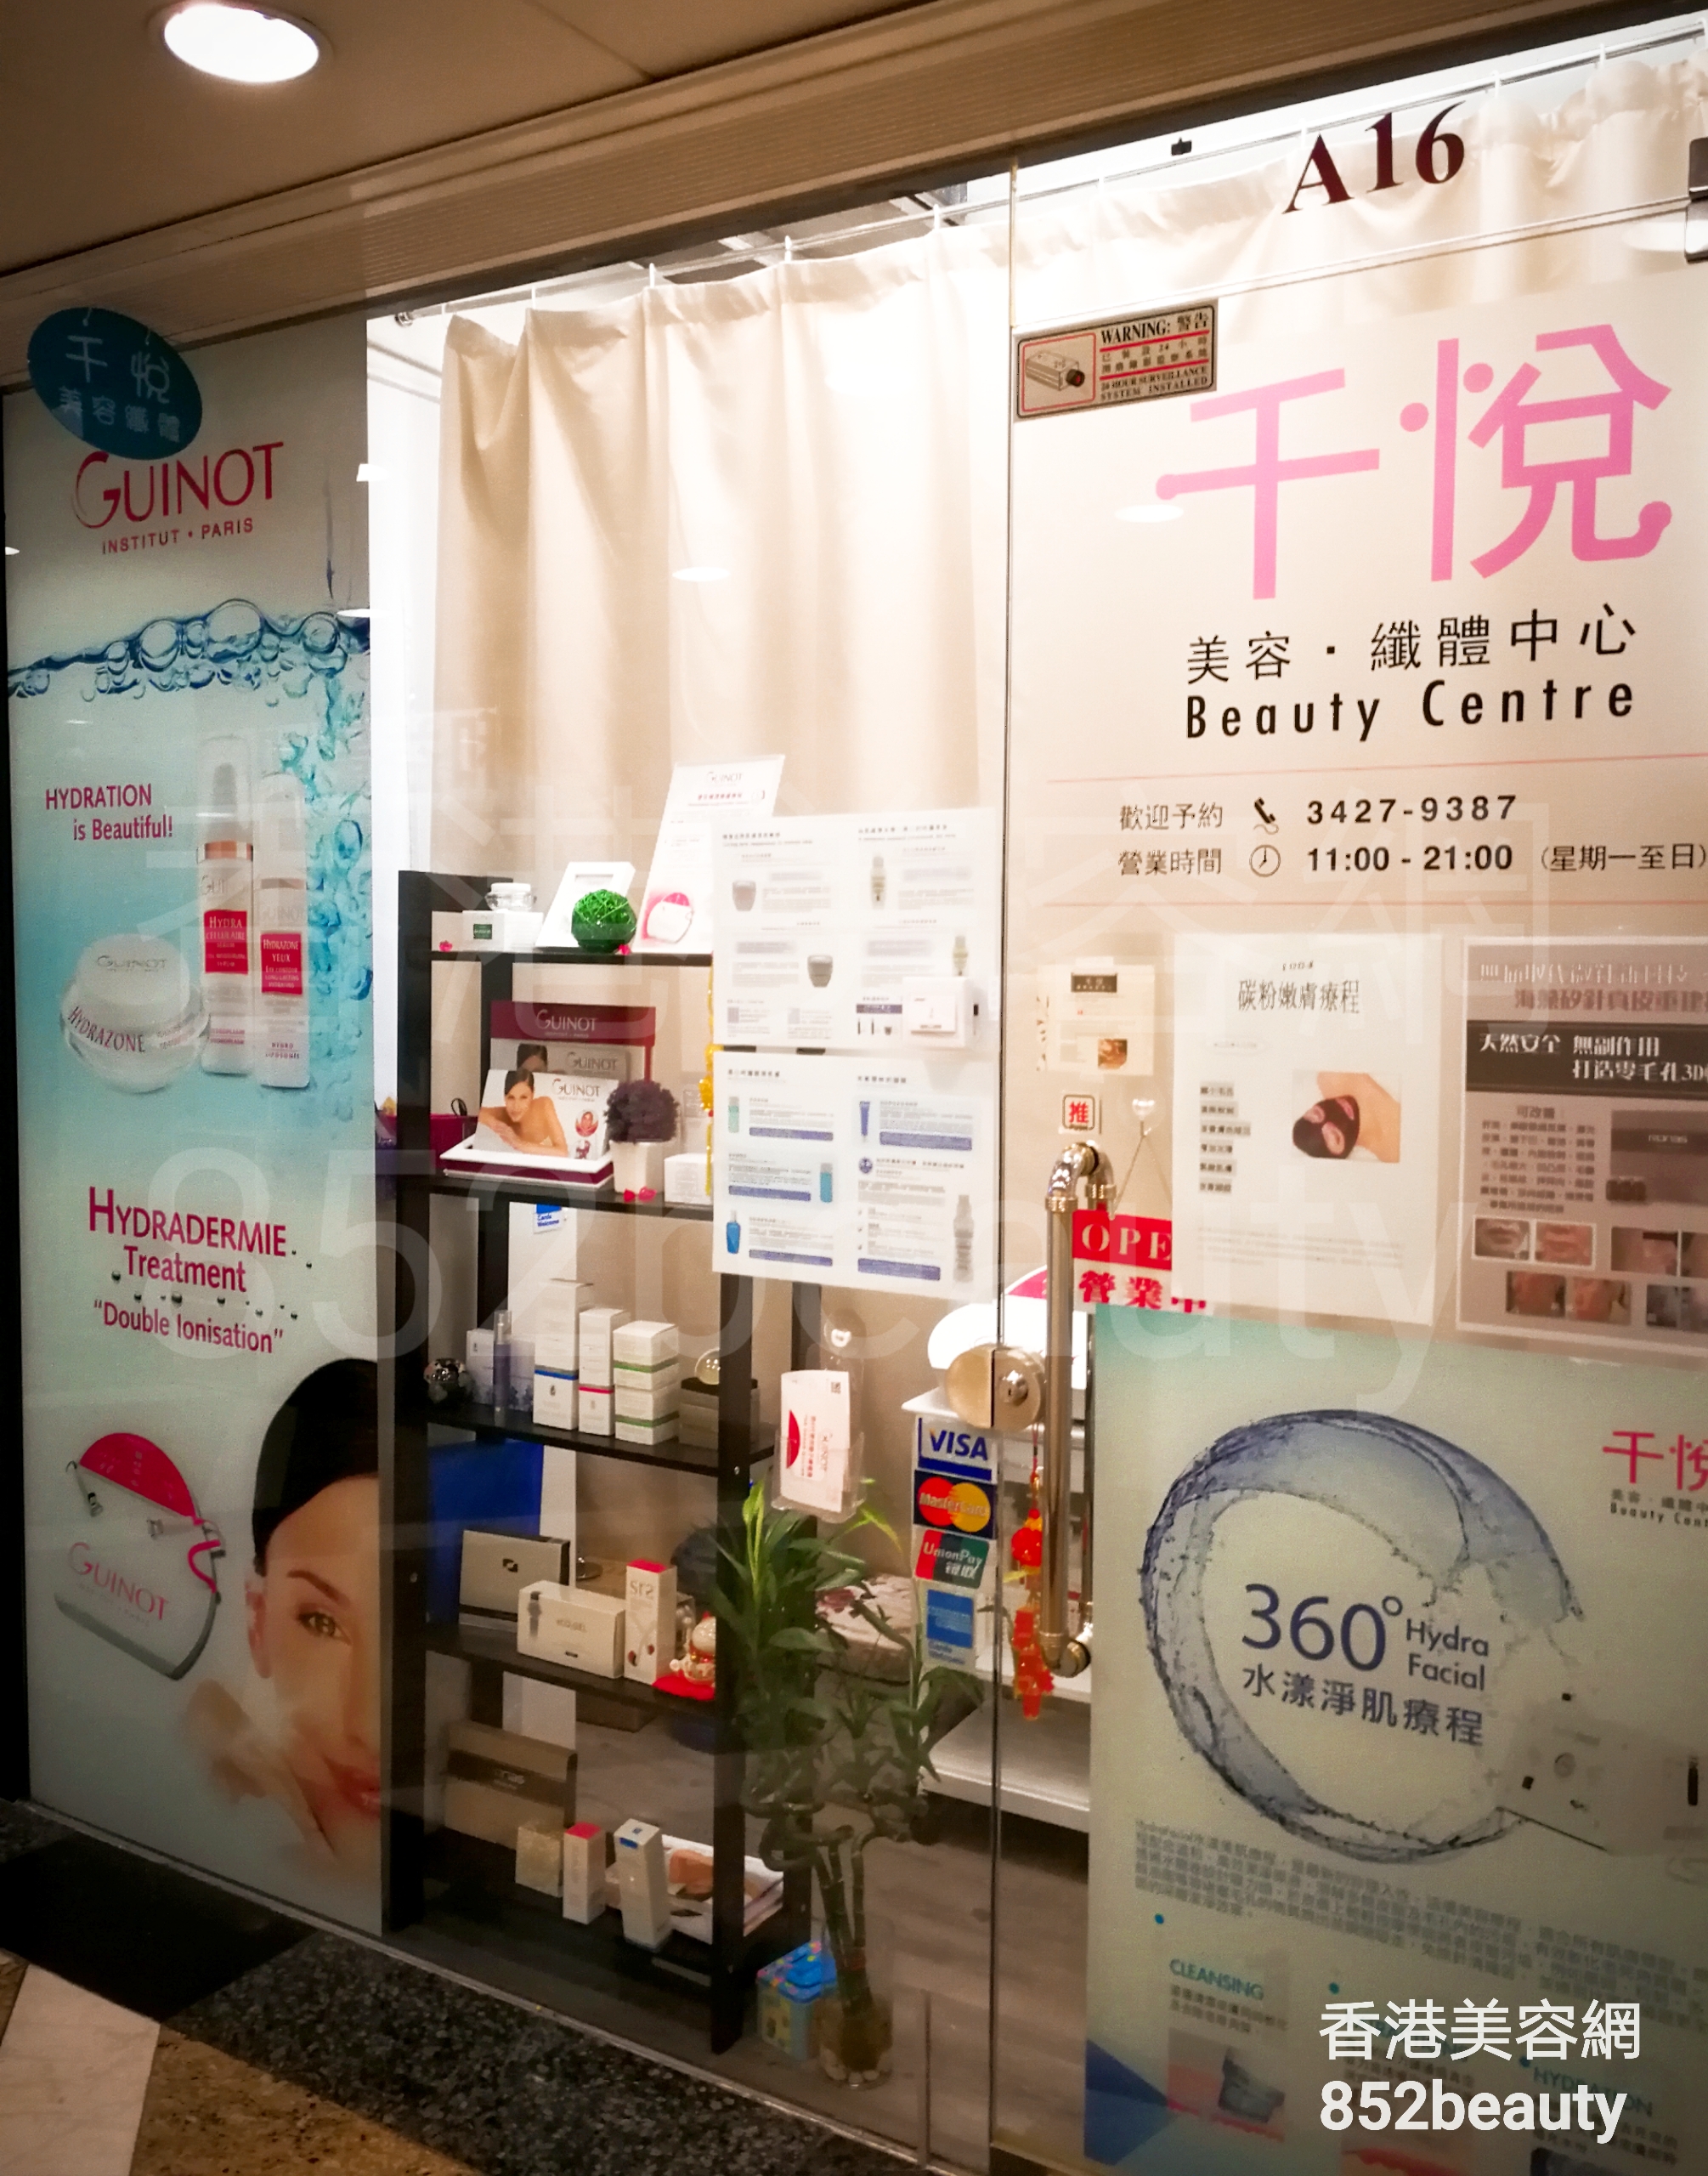 香港美容網 Hong Kong Beauty Salon 美容院 / 美容師: 千悅